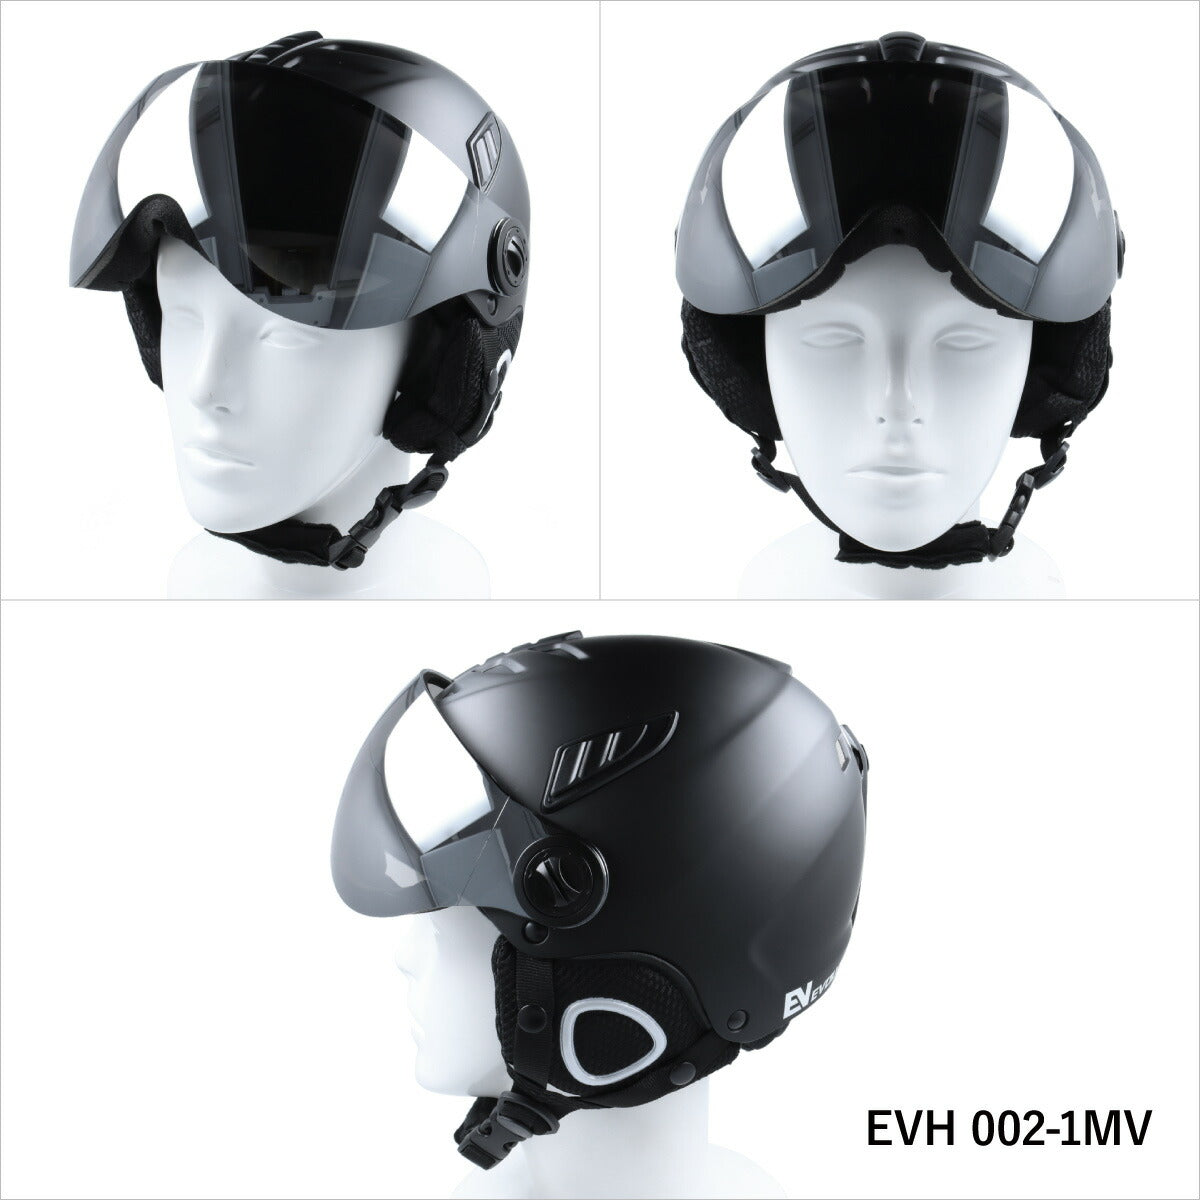 バイザー付き ヘルメット スキー スノーボード スノボ イヴァルブ EVOLVE EVH 002 全2サイズ ウィンター スポーツ ゴーグル 一体型 ハードシェル